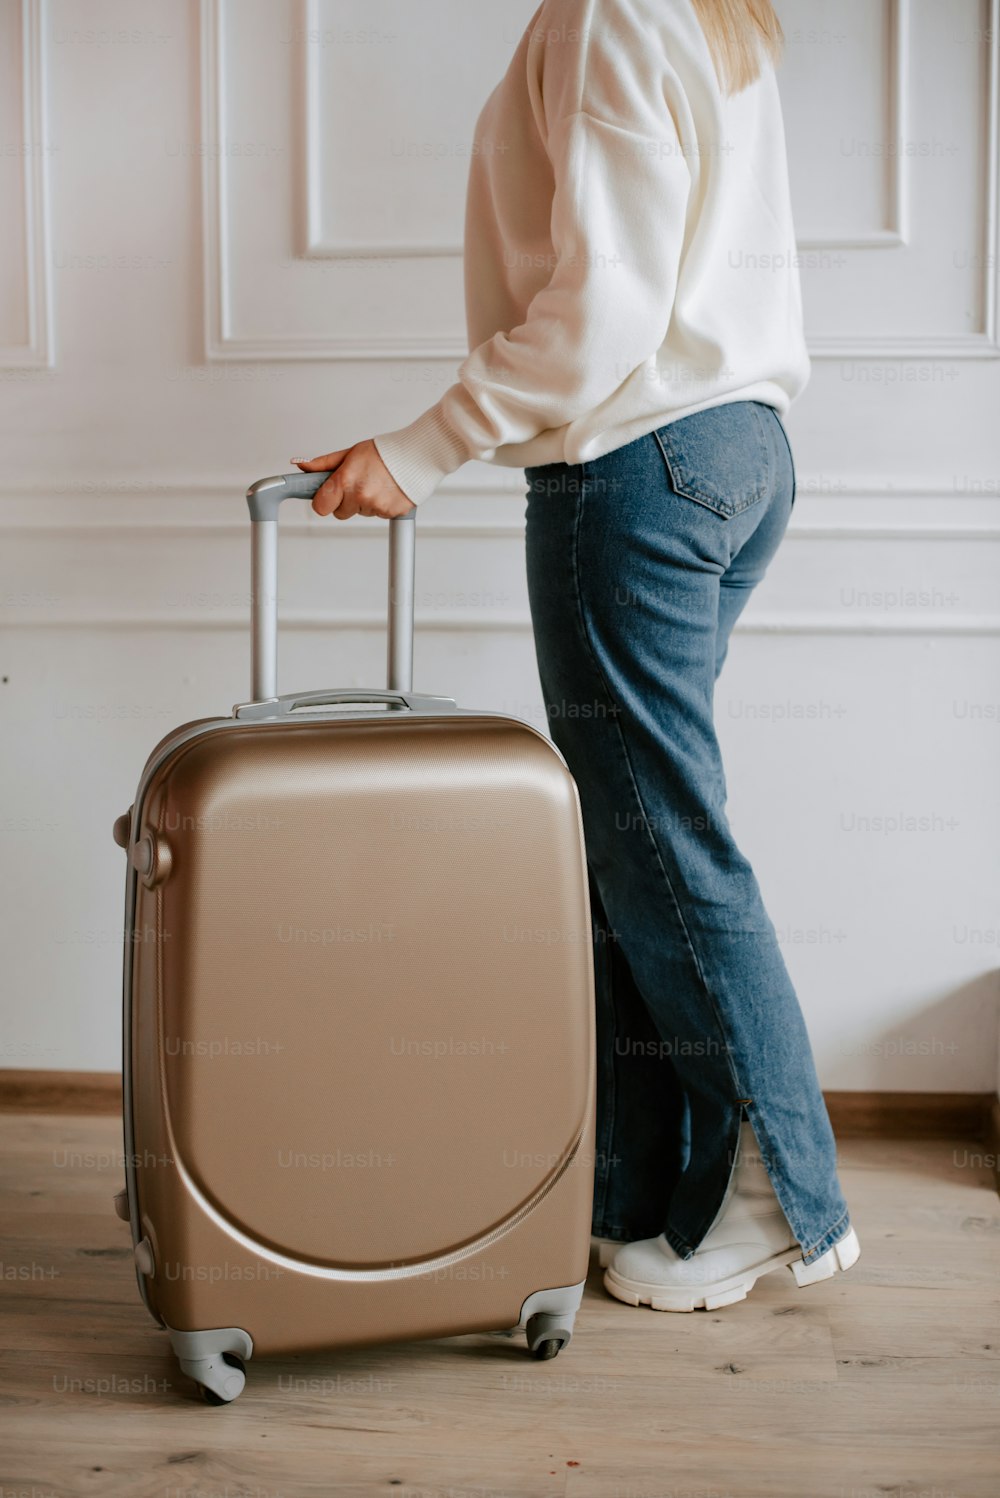 그녀의 손에 여행 가방을 들고 서있는 여자